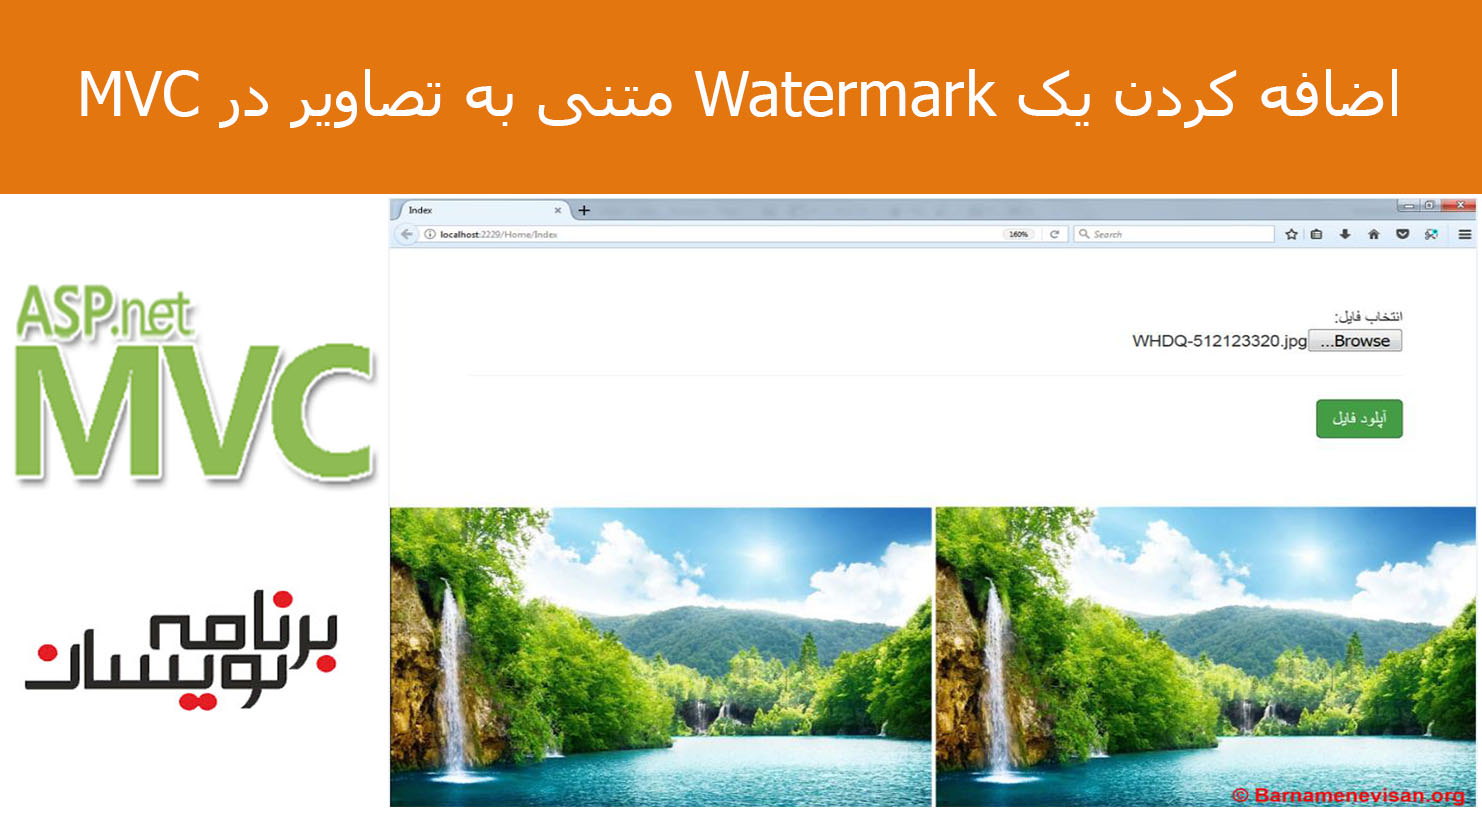 اضافه کردن یک Watermark متنی به تصاویر در MVC